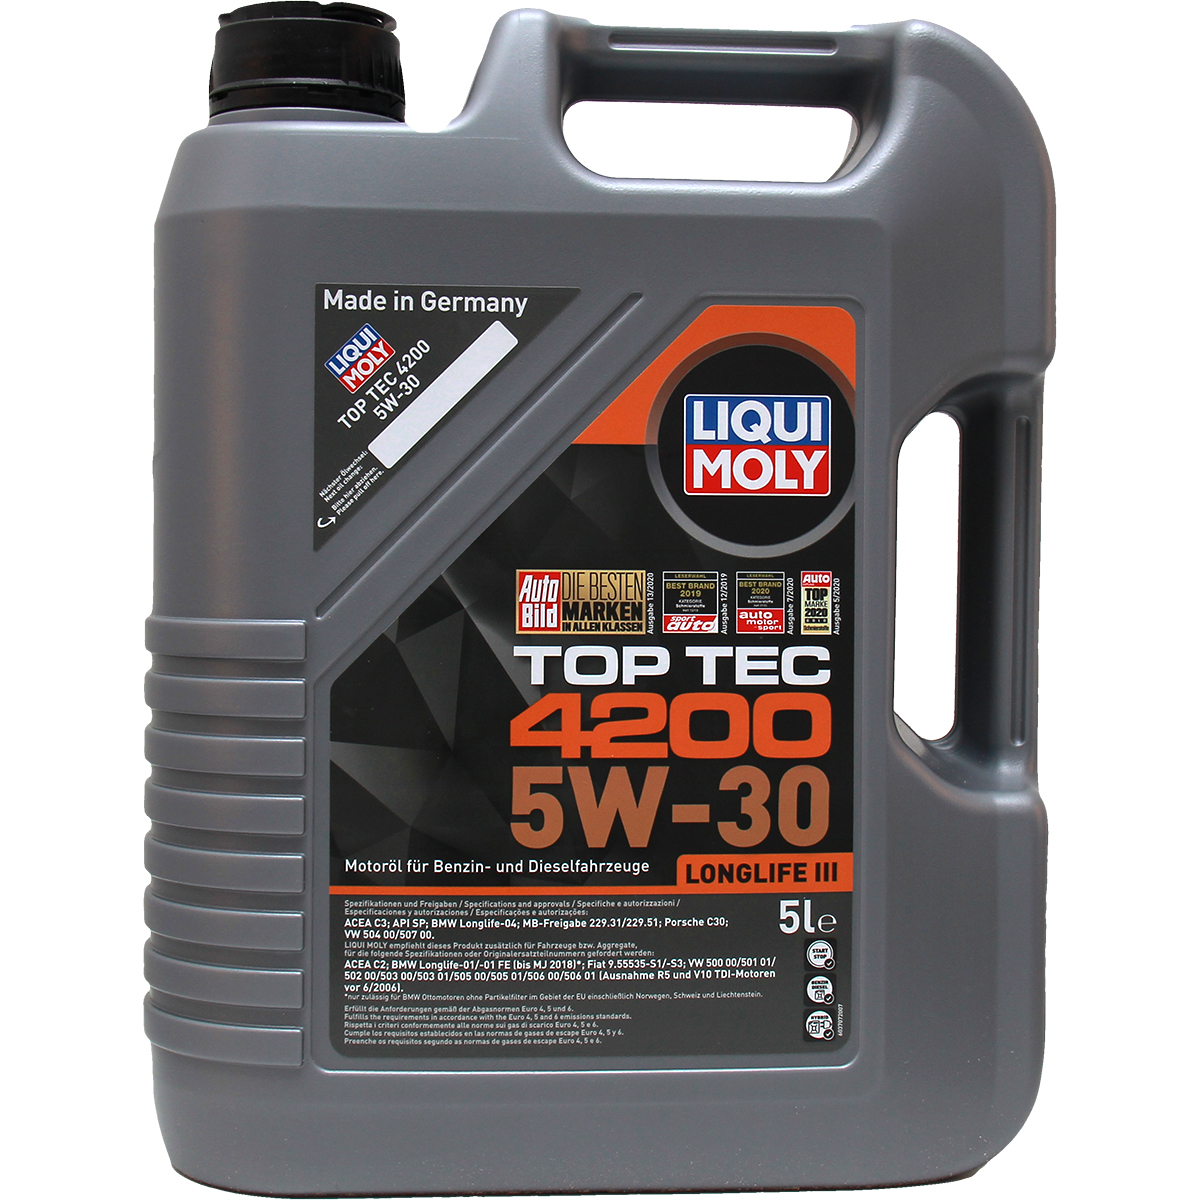 Liqui Moly Top Tec 4200 5W-30 5+1 Liter